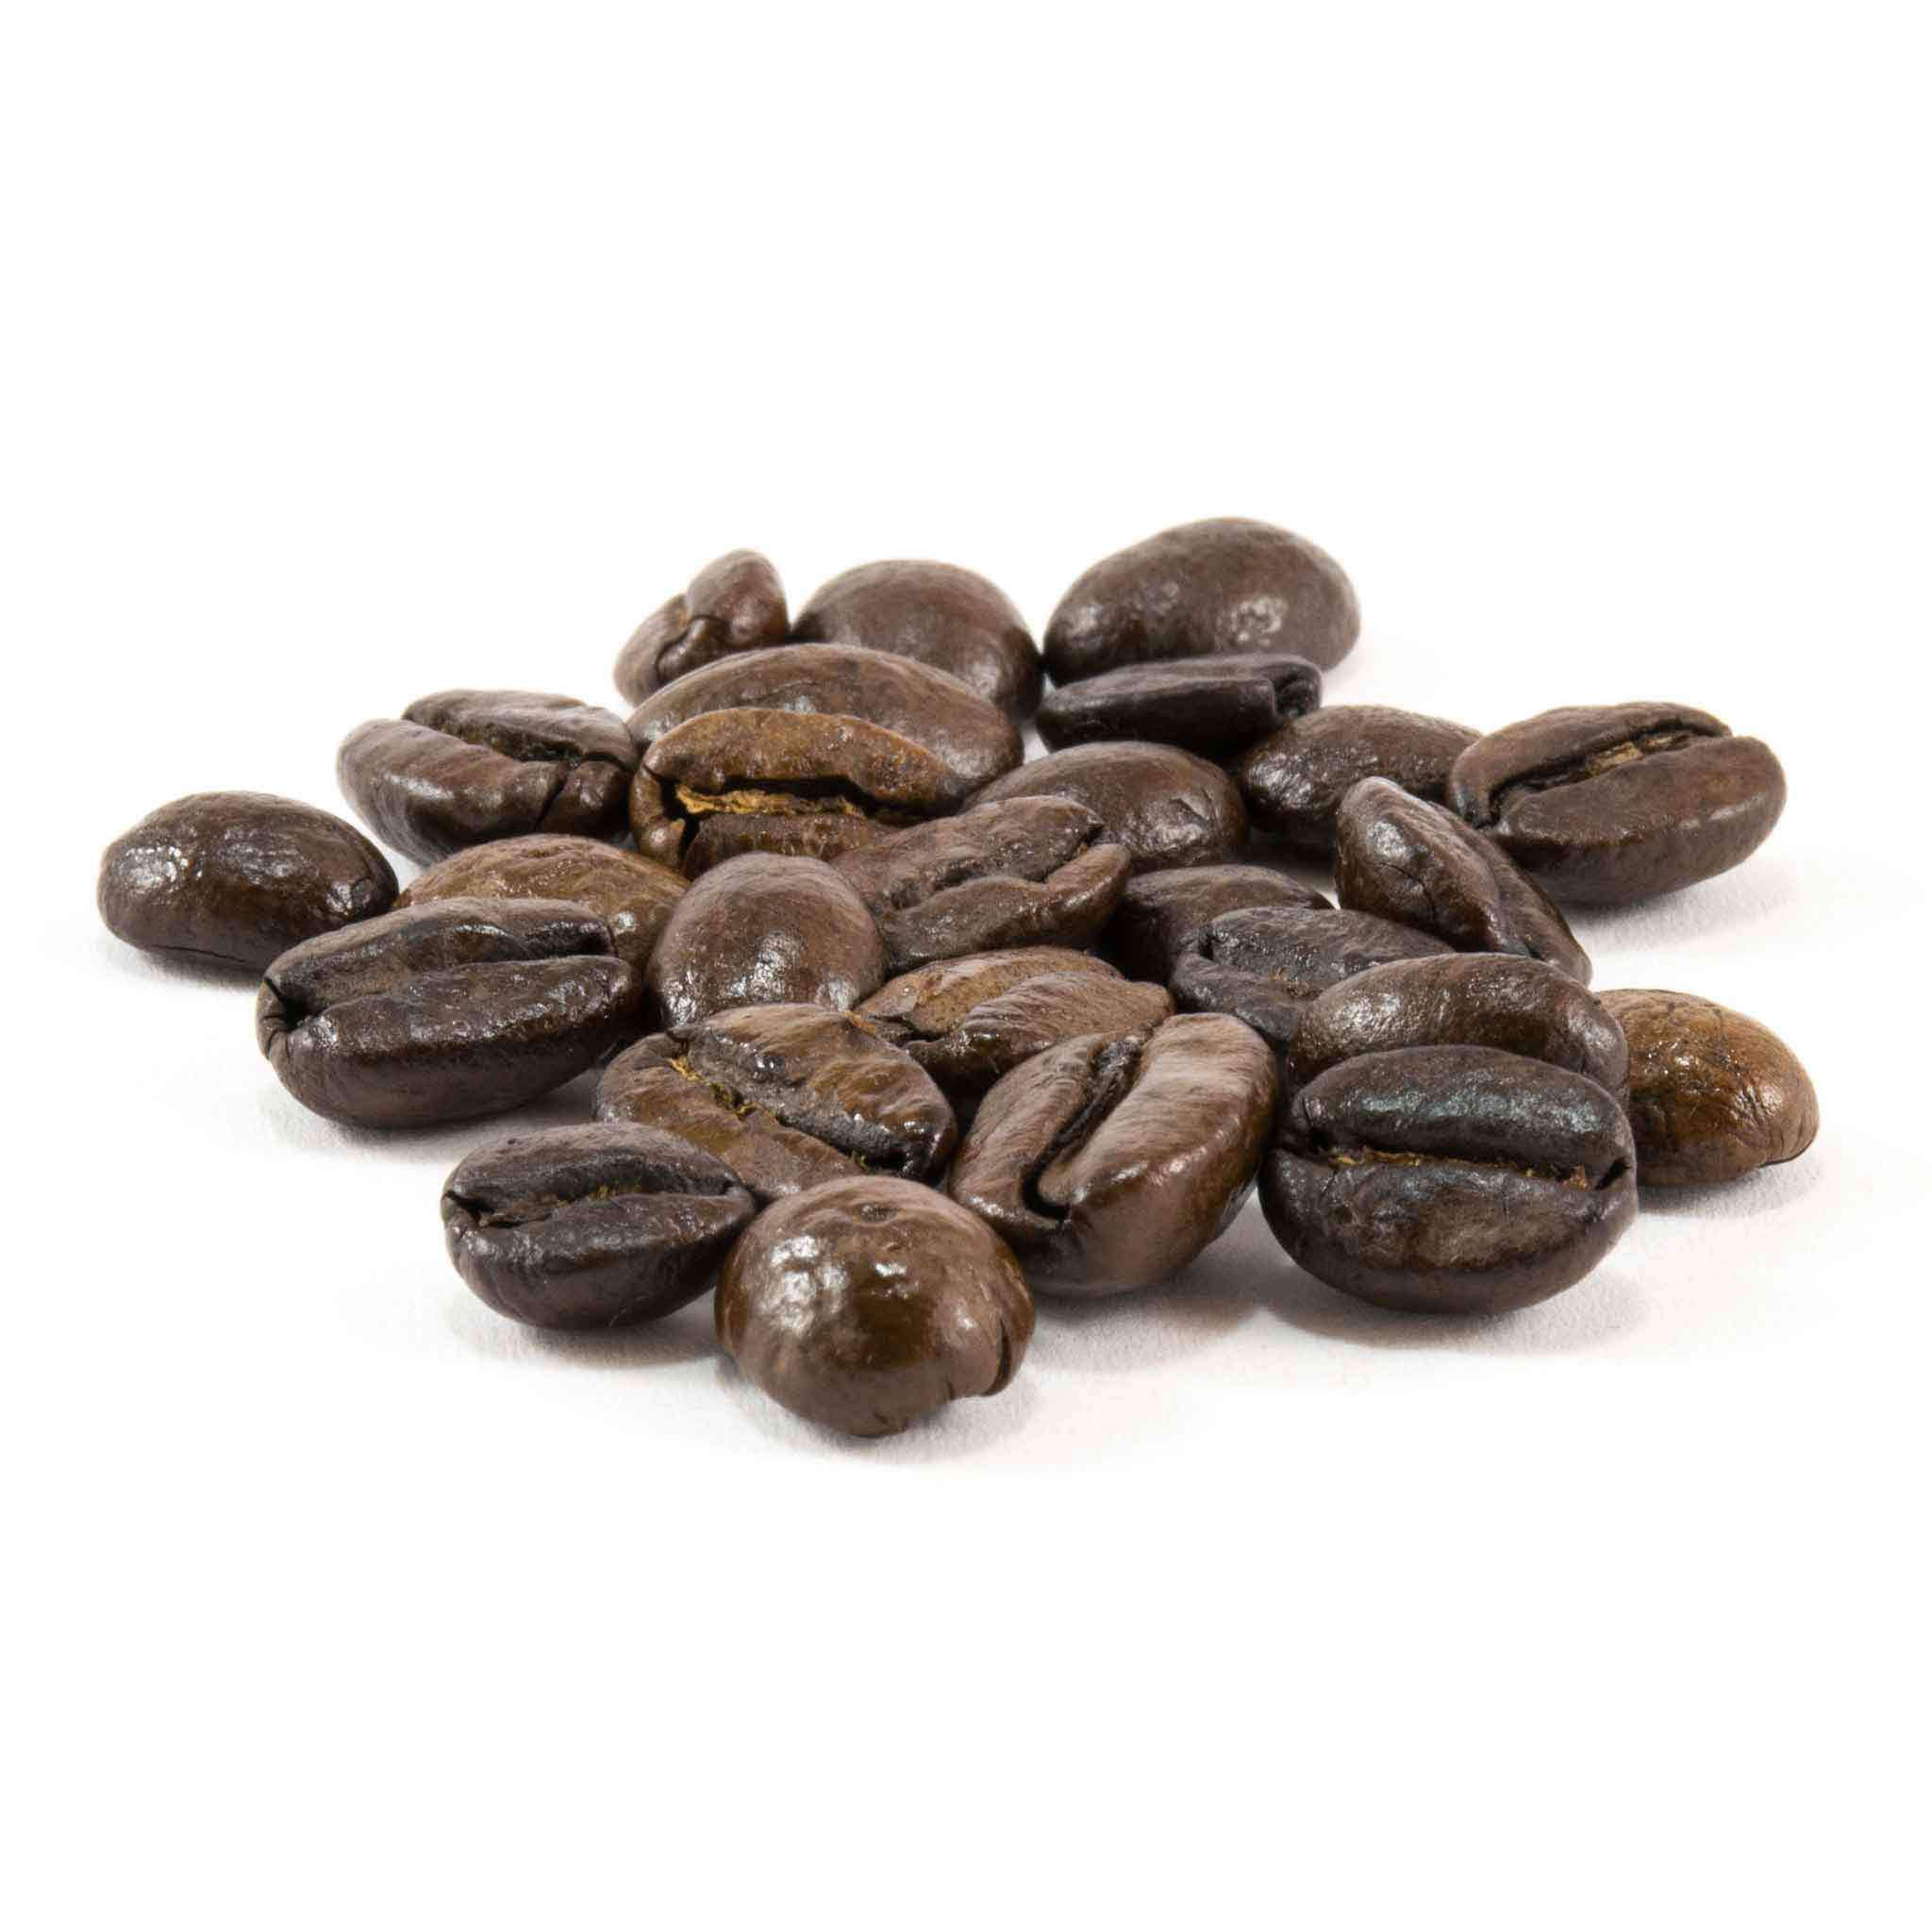 The Daily Bean – Daily Bean Coffee